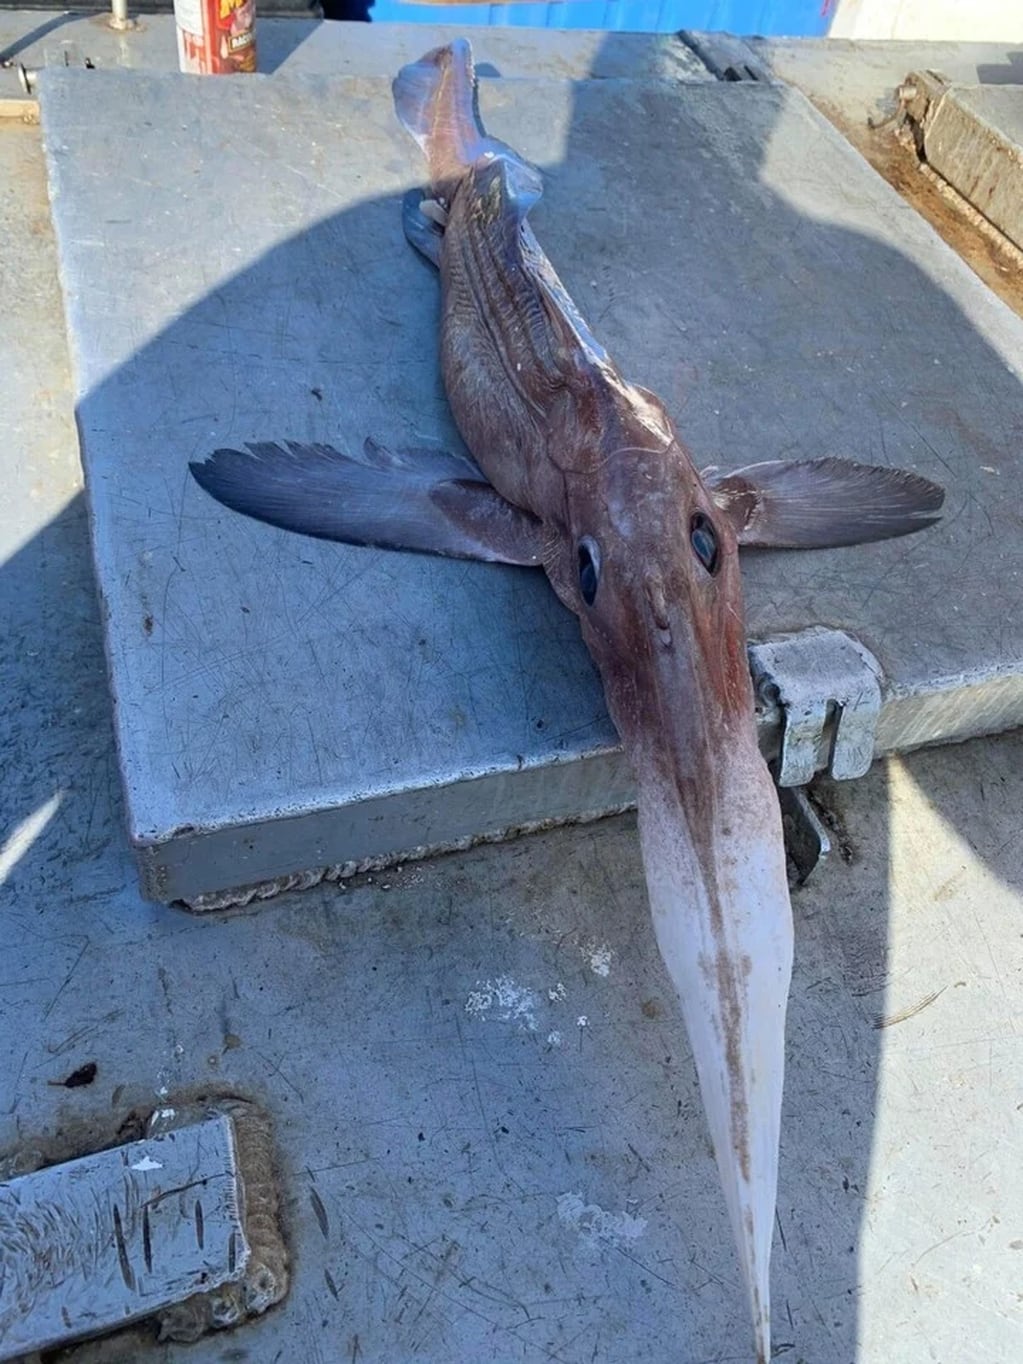 La extraña forma y las llamativas características de la criatura marina dejaron sorprendidos a los demás pescadores en el muelle de Bahía de Bonavista.